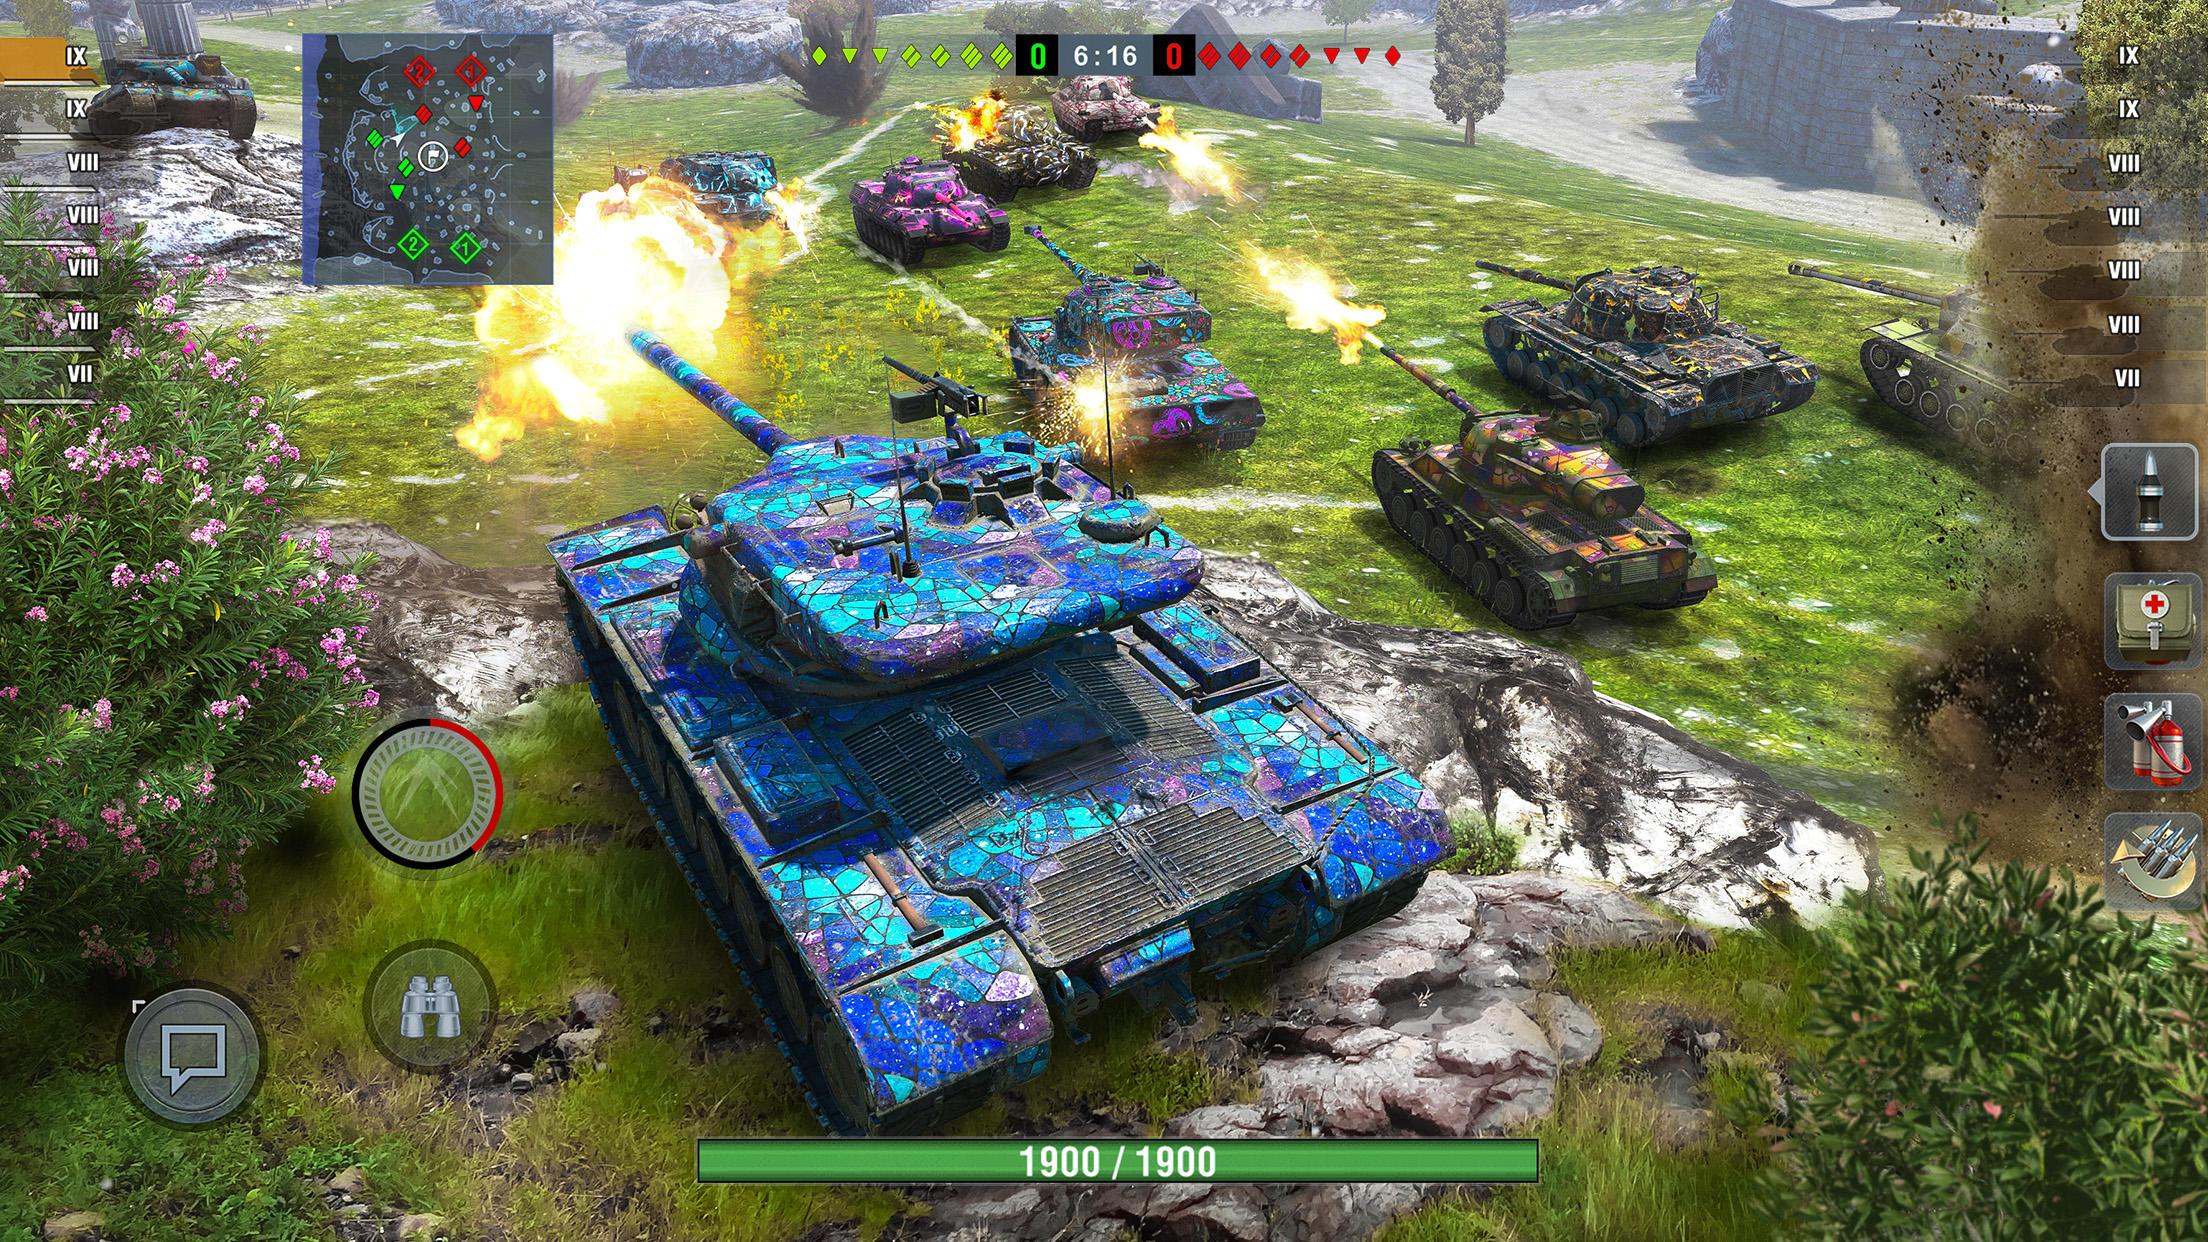 Screenshot 1 of टैंक ब्लिट्ज की दुनिया - पीवीपी MMO 11.0.0.516